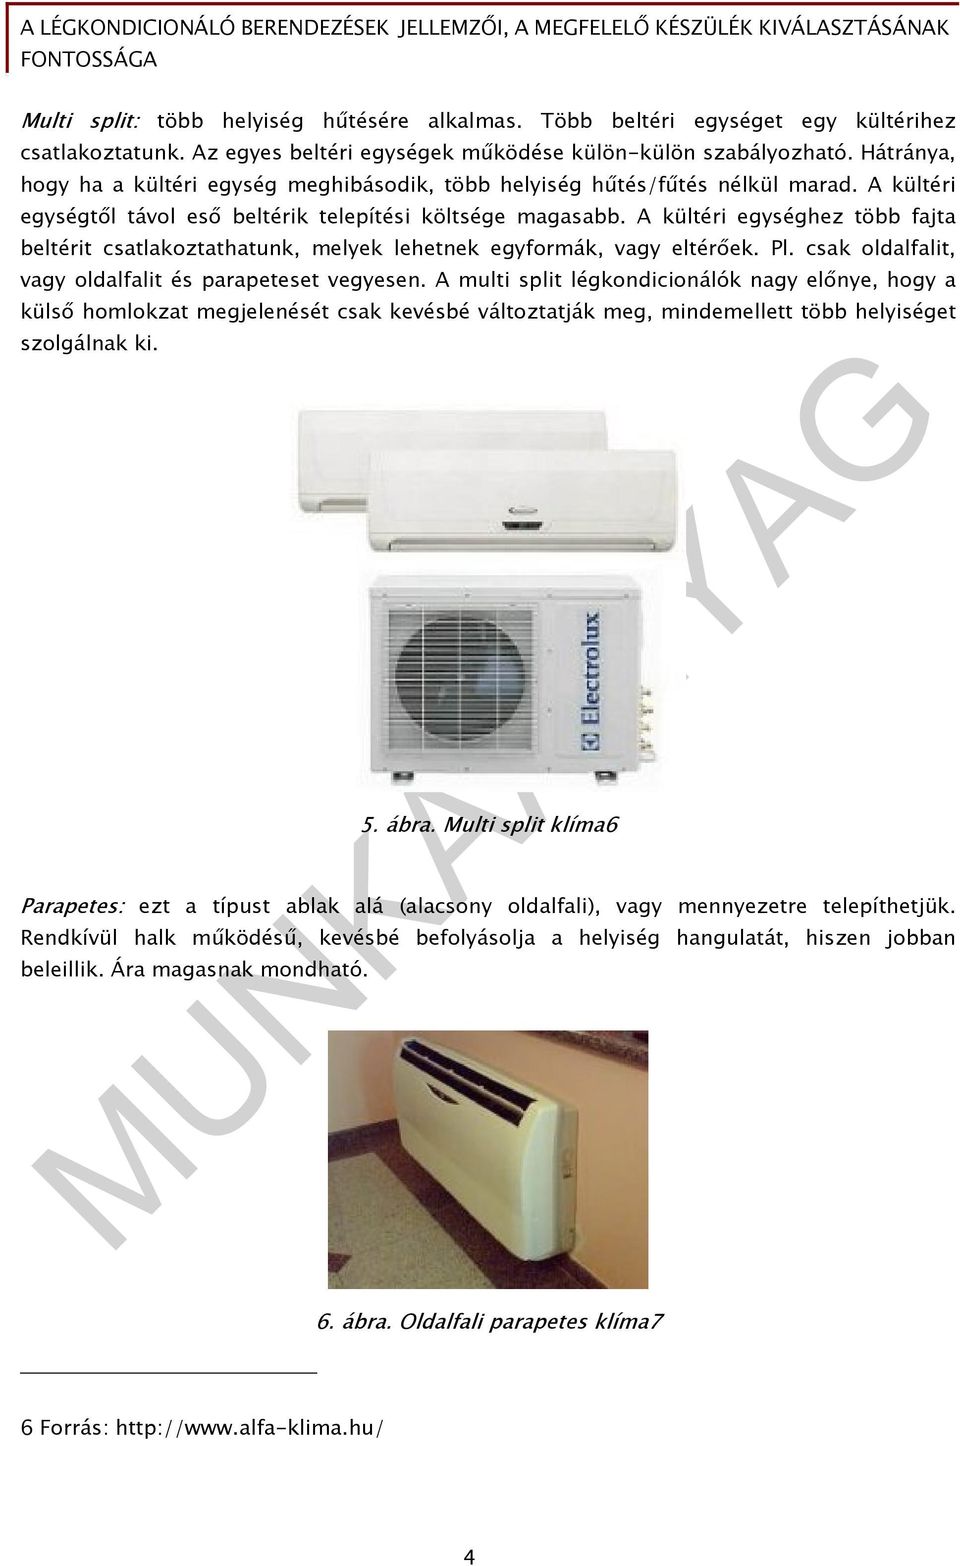 A légkondicionáló berendezések jellemzői, a megfelelő készülék  kiválasztásának fontossága - PDF Ingyenes letöltés